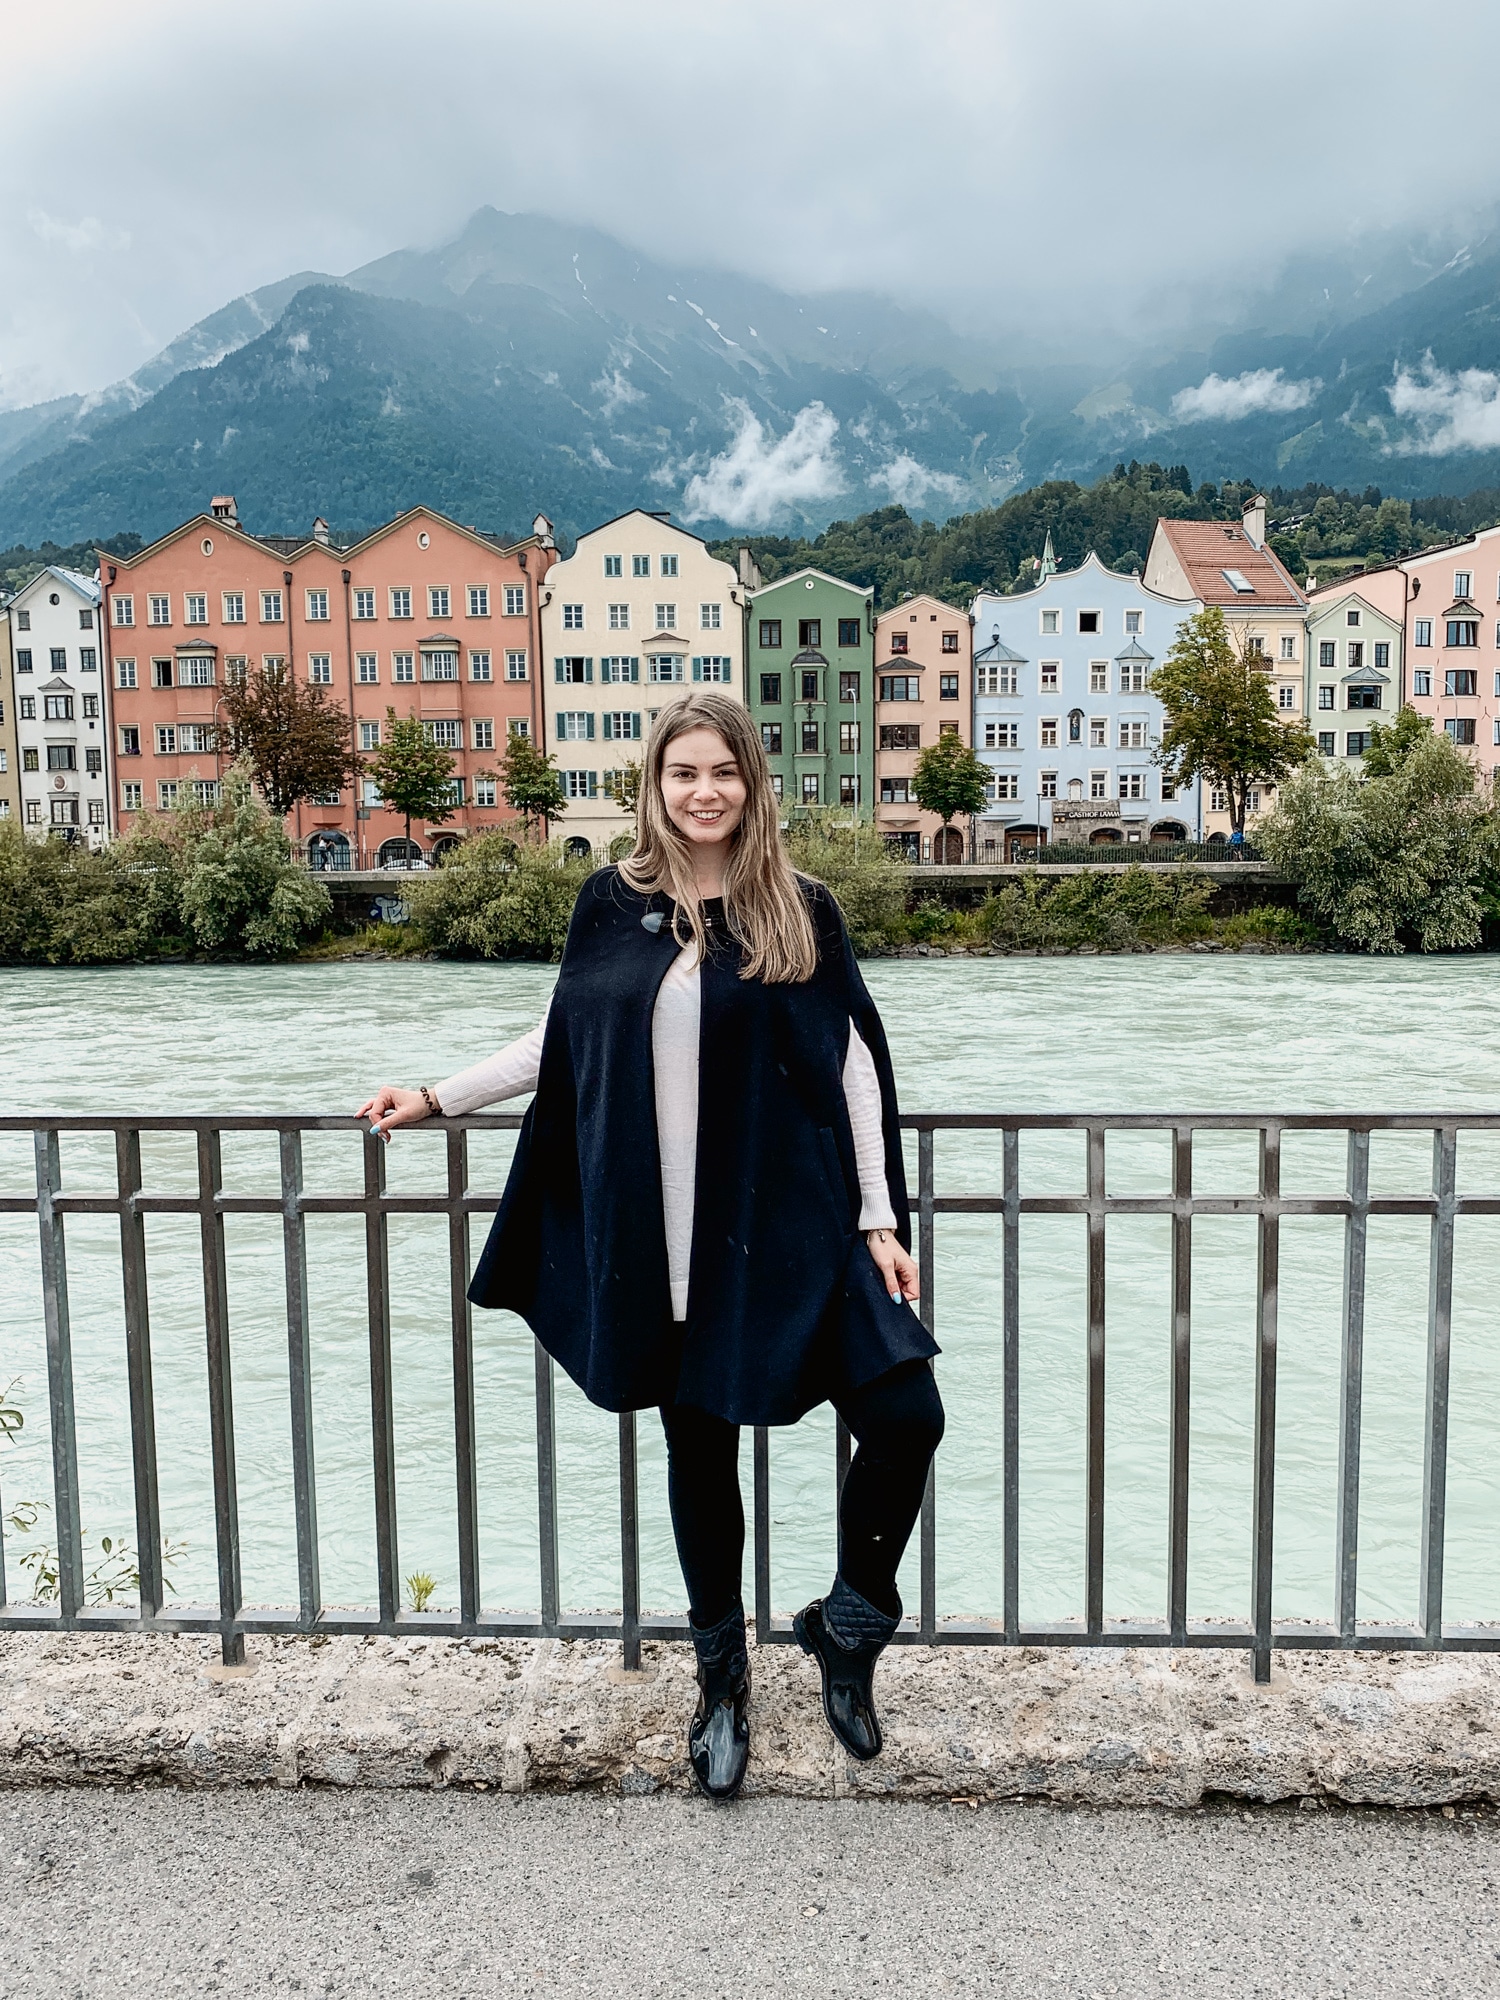 Innsbruck Sehenswürdigkeiten: Top Ten Highlights und Tipps für die Stadt - Aussicht Maria-Hilf